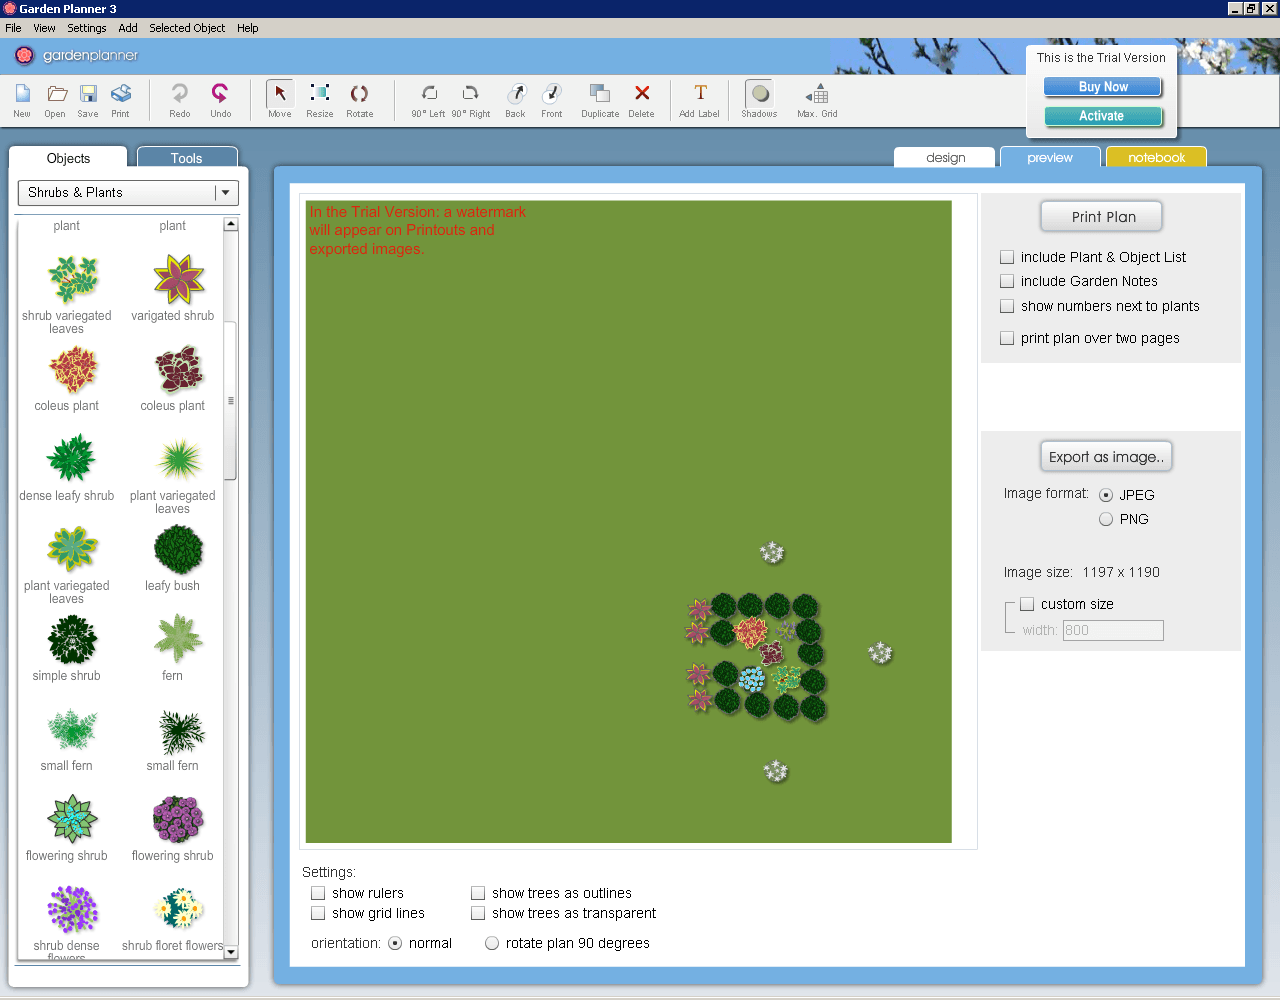 Garden Planner 3.8.48 download the new version